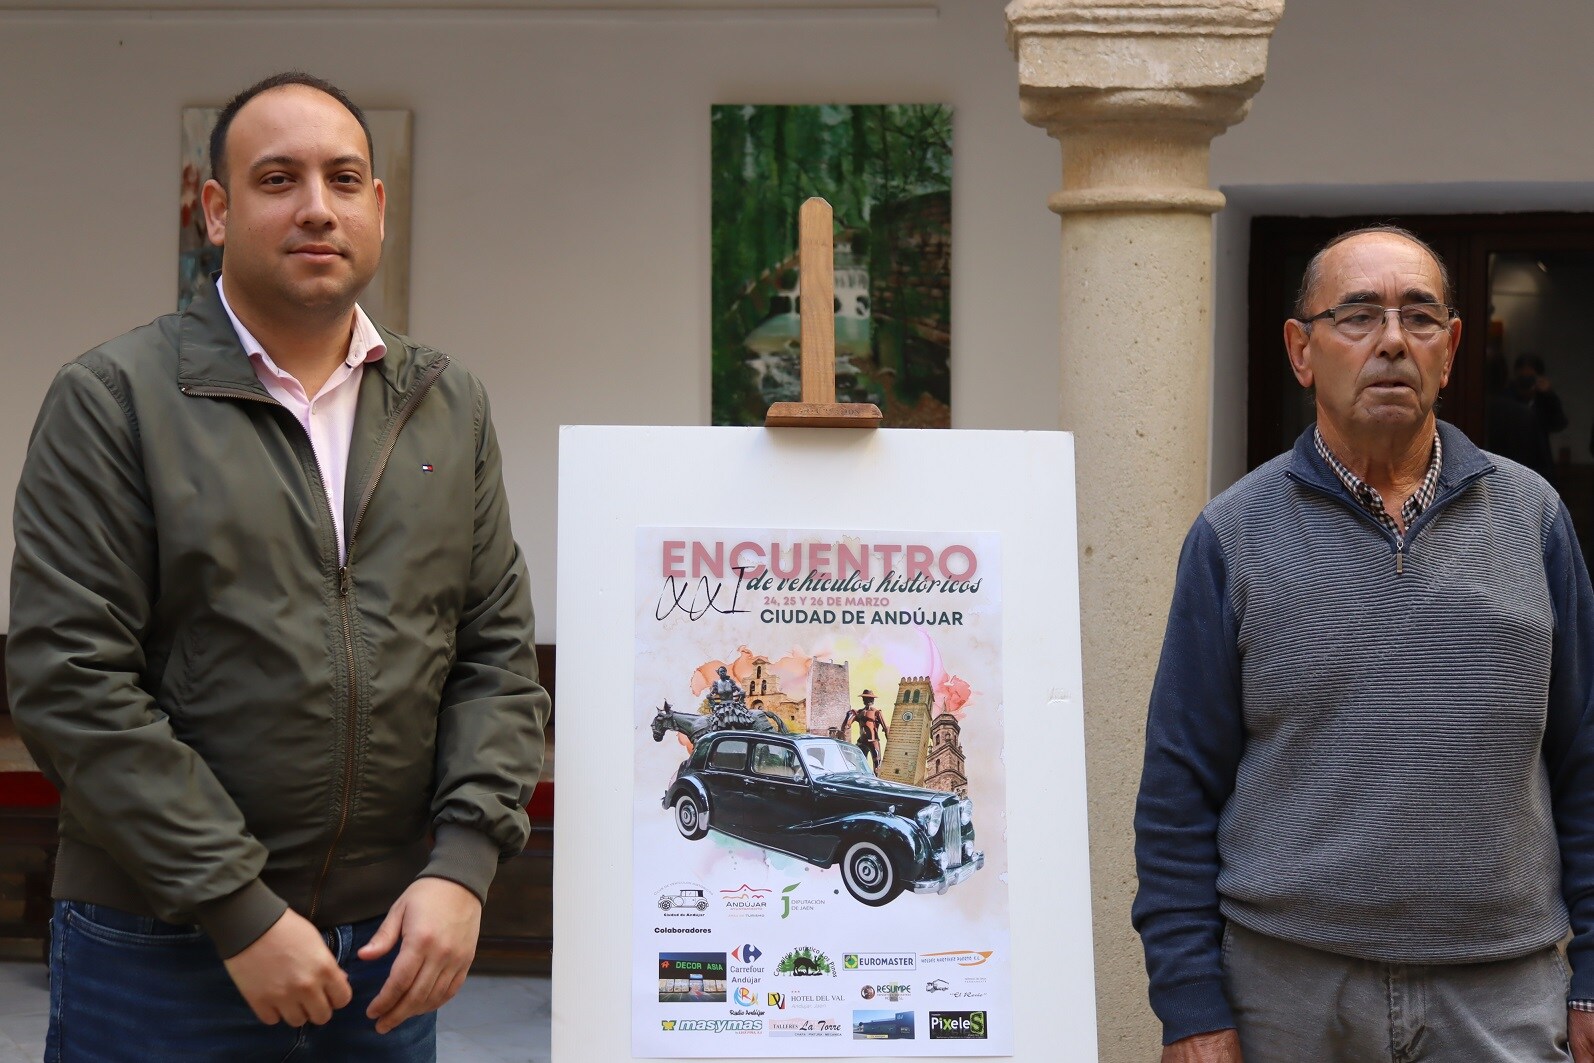 La XXI Edición del Encuentro de Vehículos Históricos &#039;Ciudad de Andújar&#039; tendrá lugar los días 24, 25 y 26 de marzo 